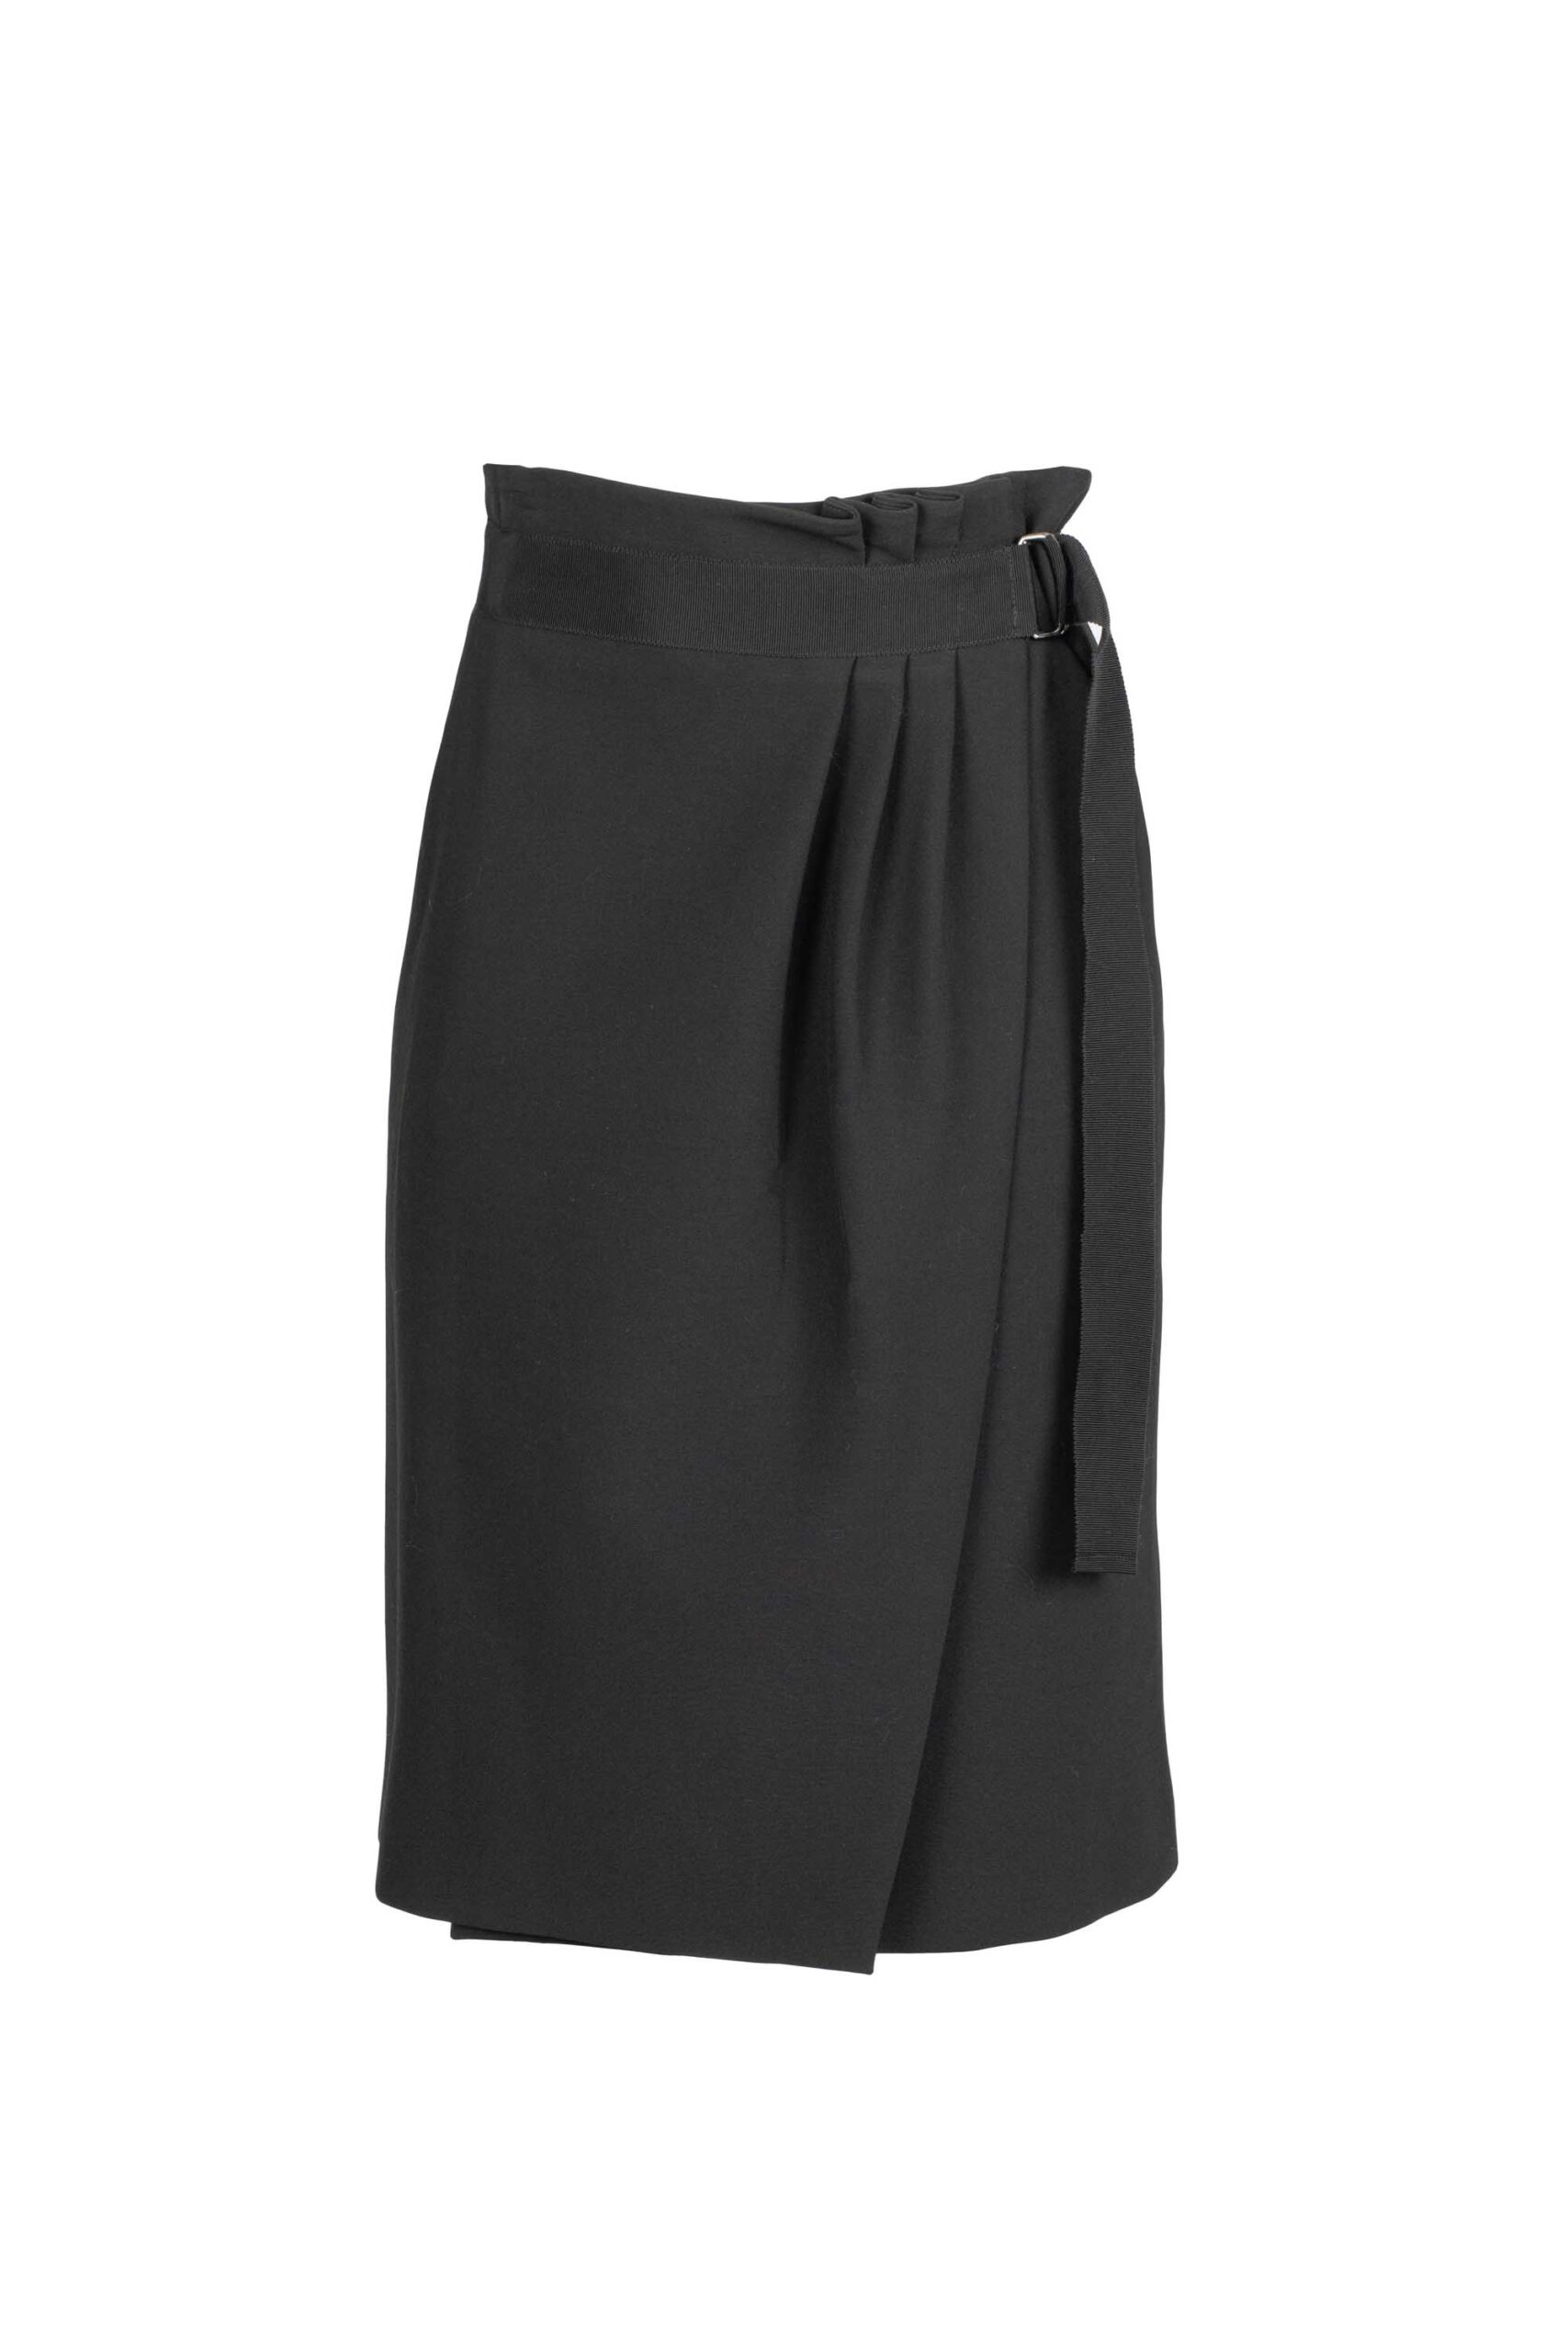 High Waist Wrap Skirt with Belt Detail